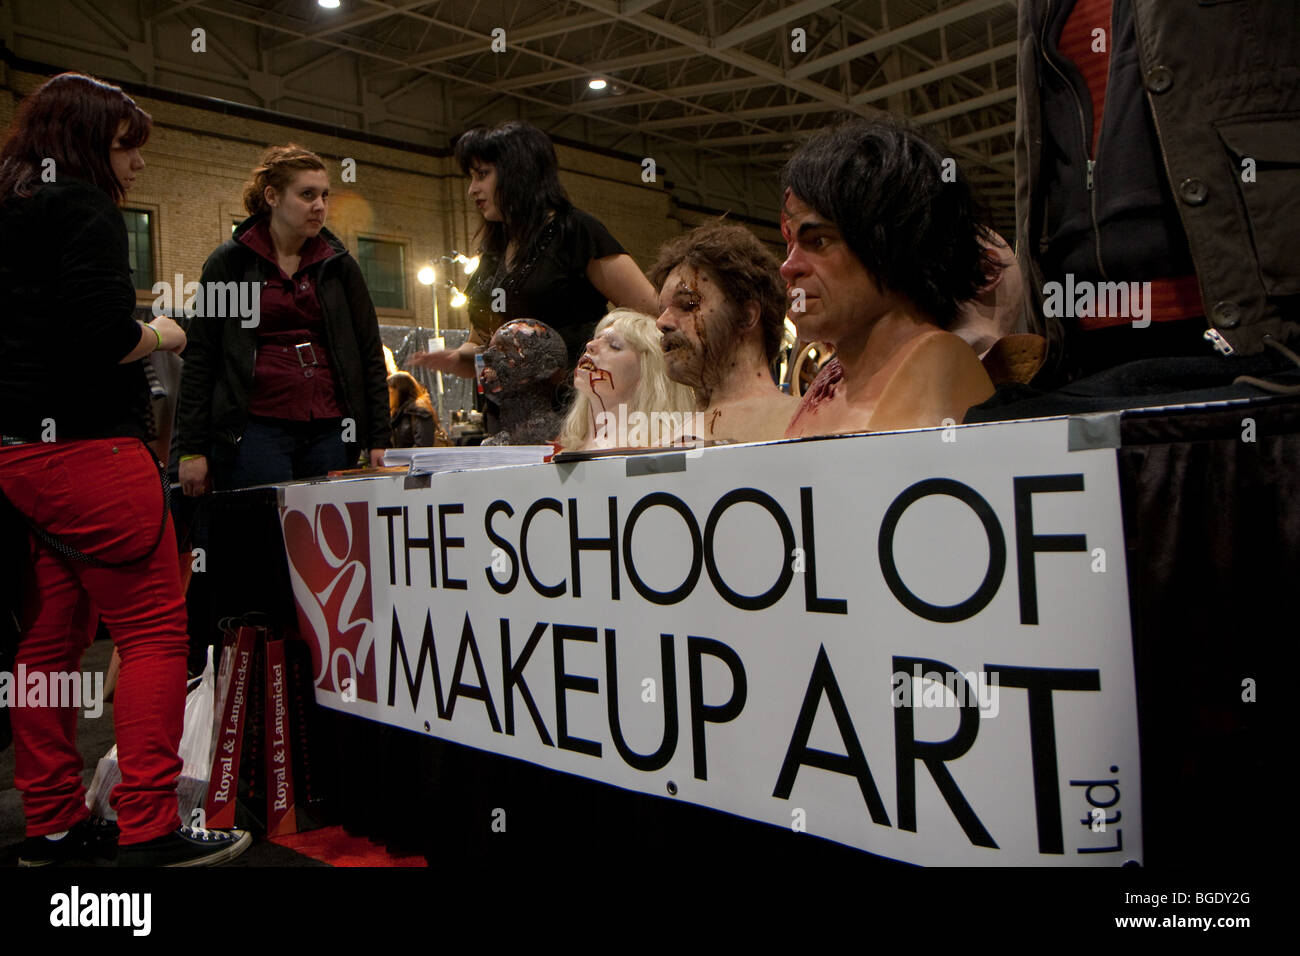 school of makeup artist banner Stock Photo - Alamy